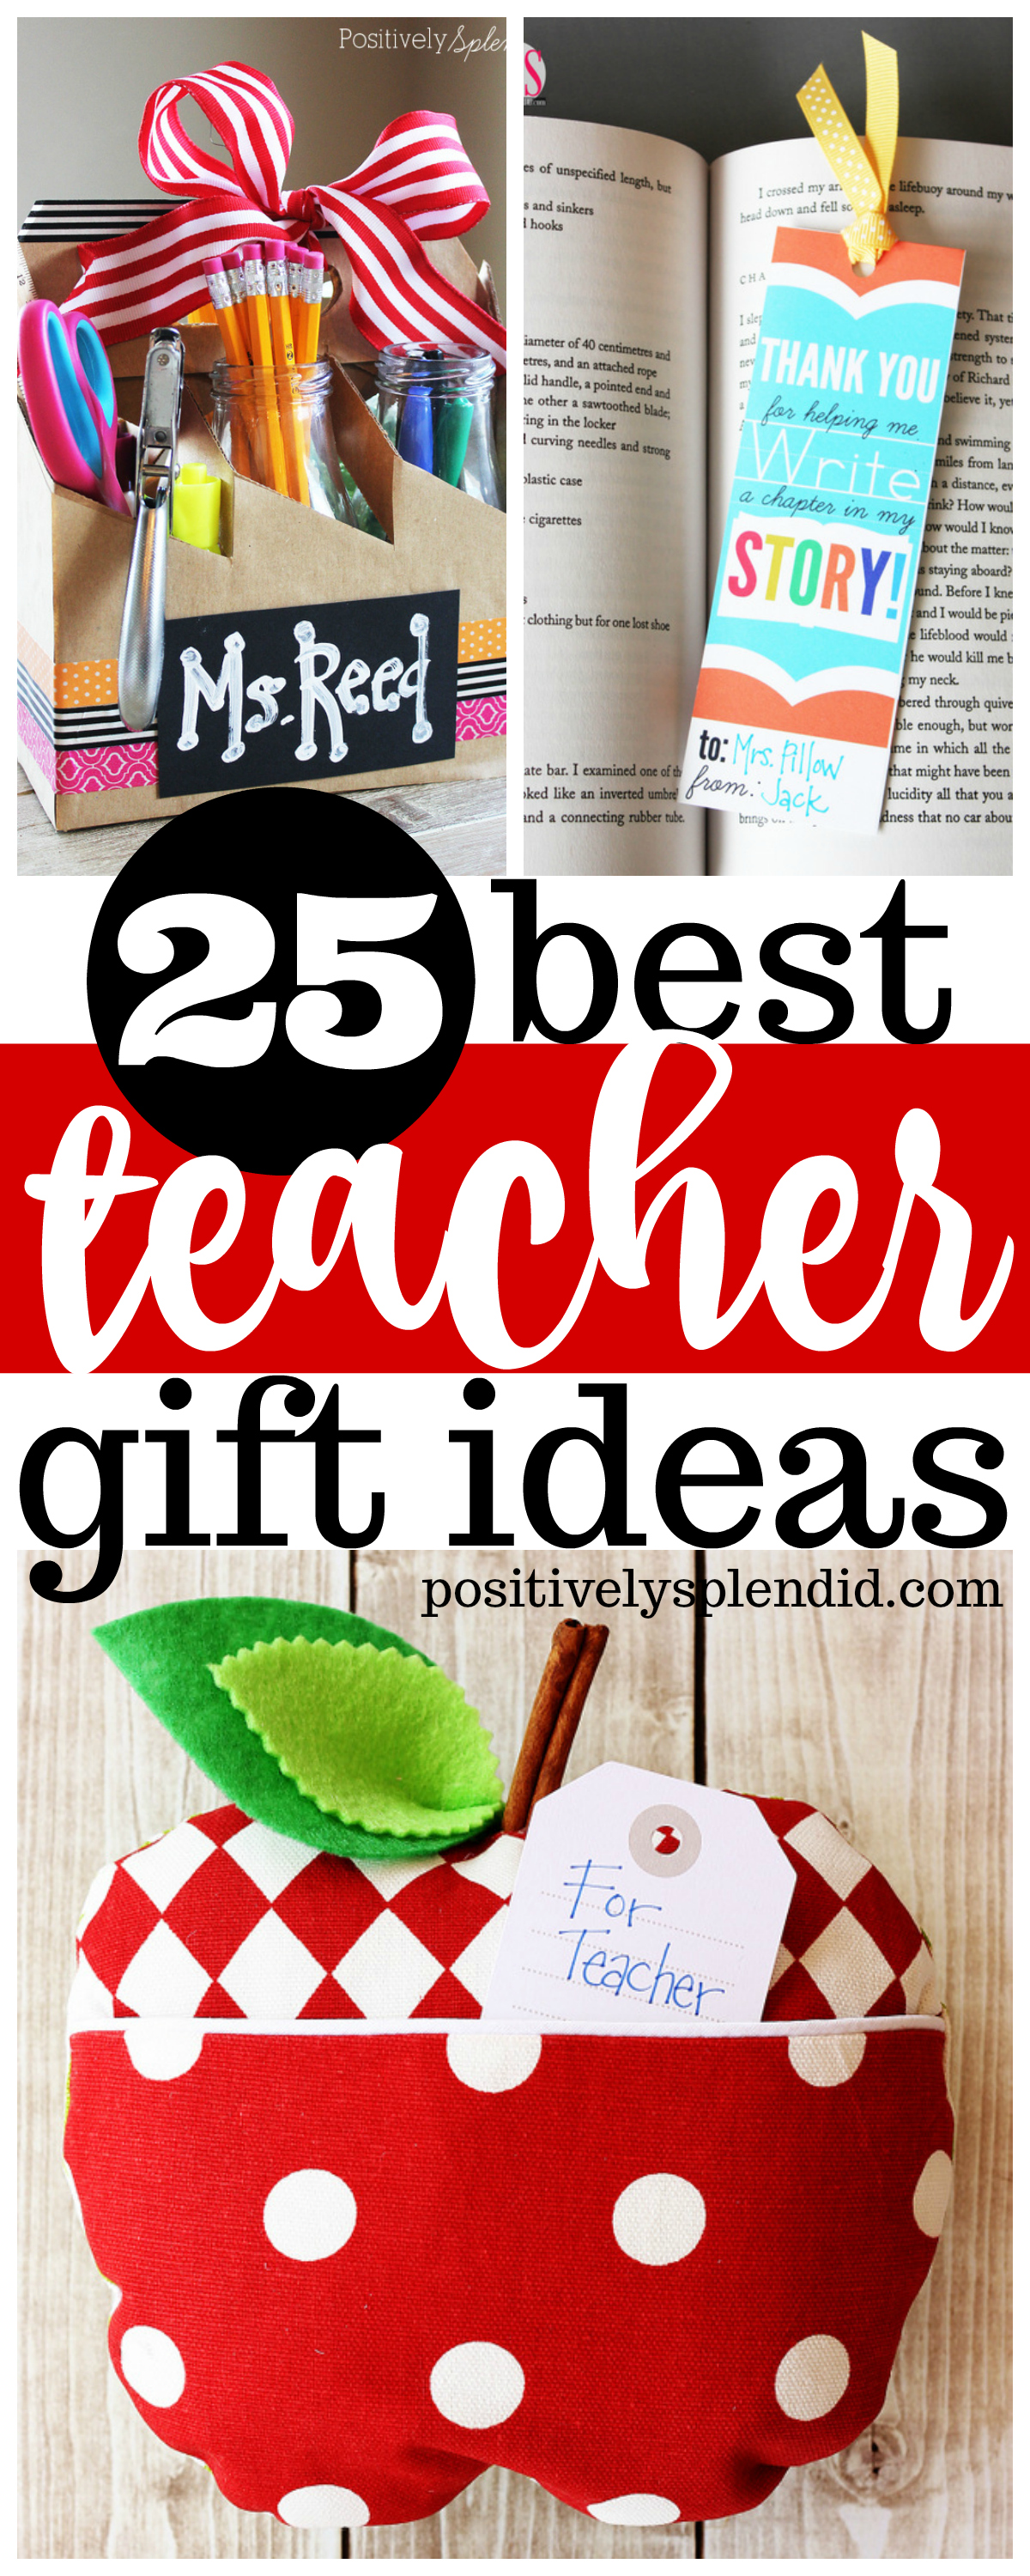 25-best-teacher-gift-ideas-positively-splendid-crafts-sewing